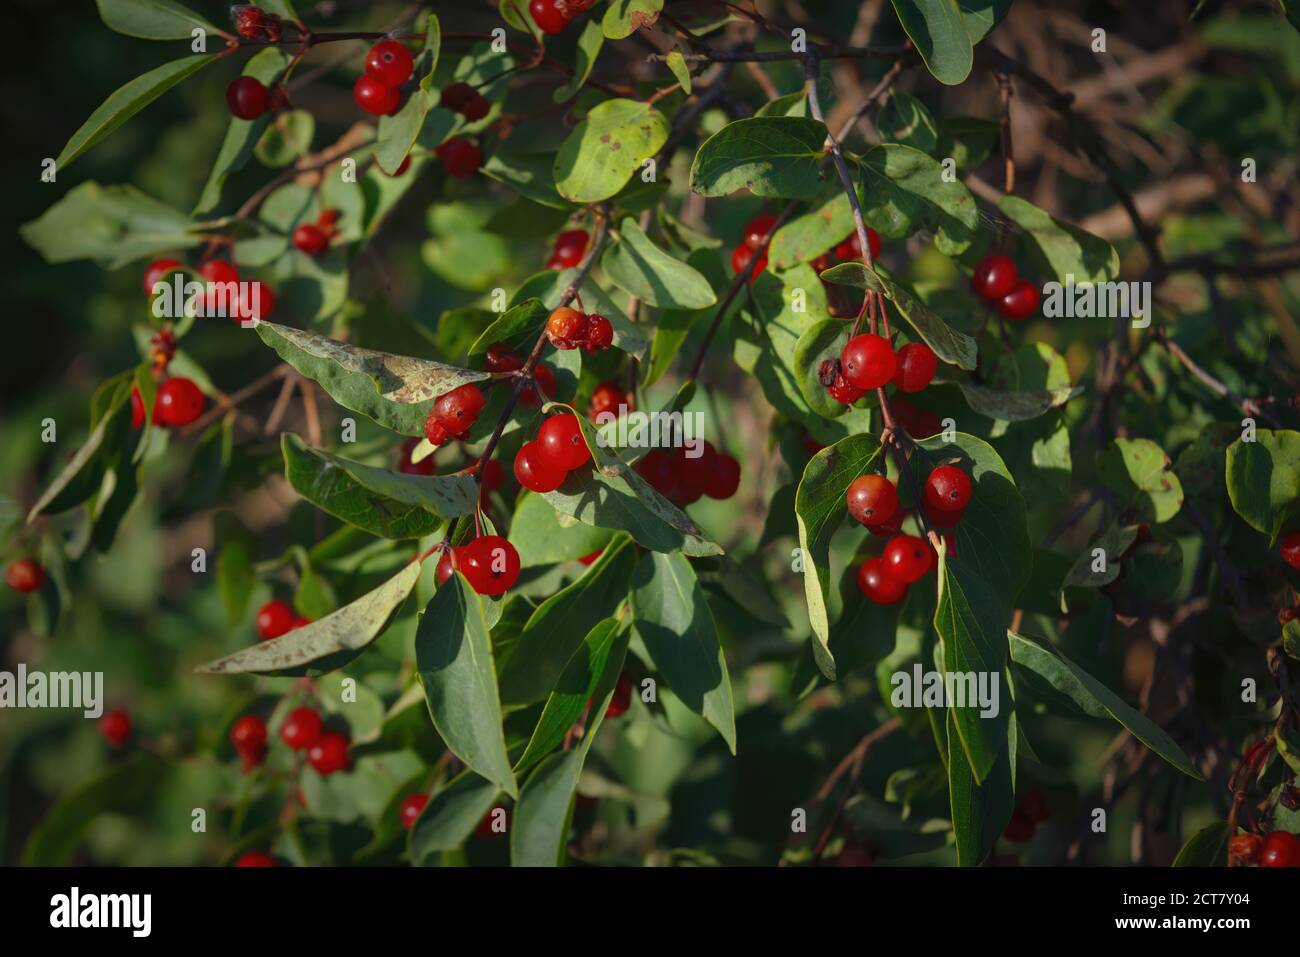 Berries of alder buckthorn. Frangula alnus. Red berries of Frangula alnus bush. Stock Photo